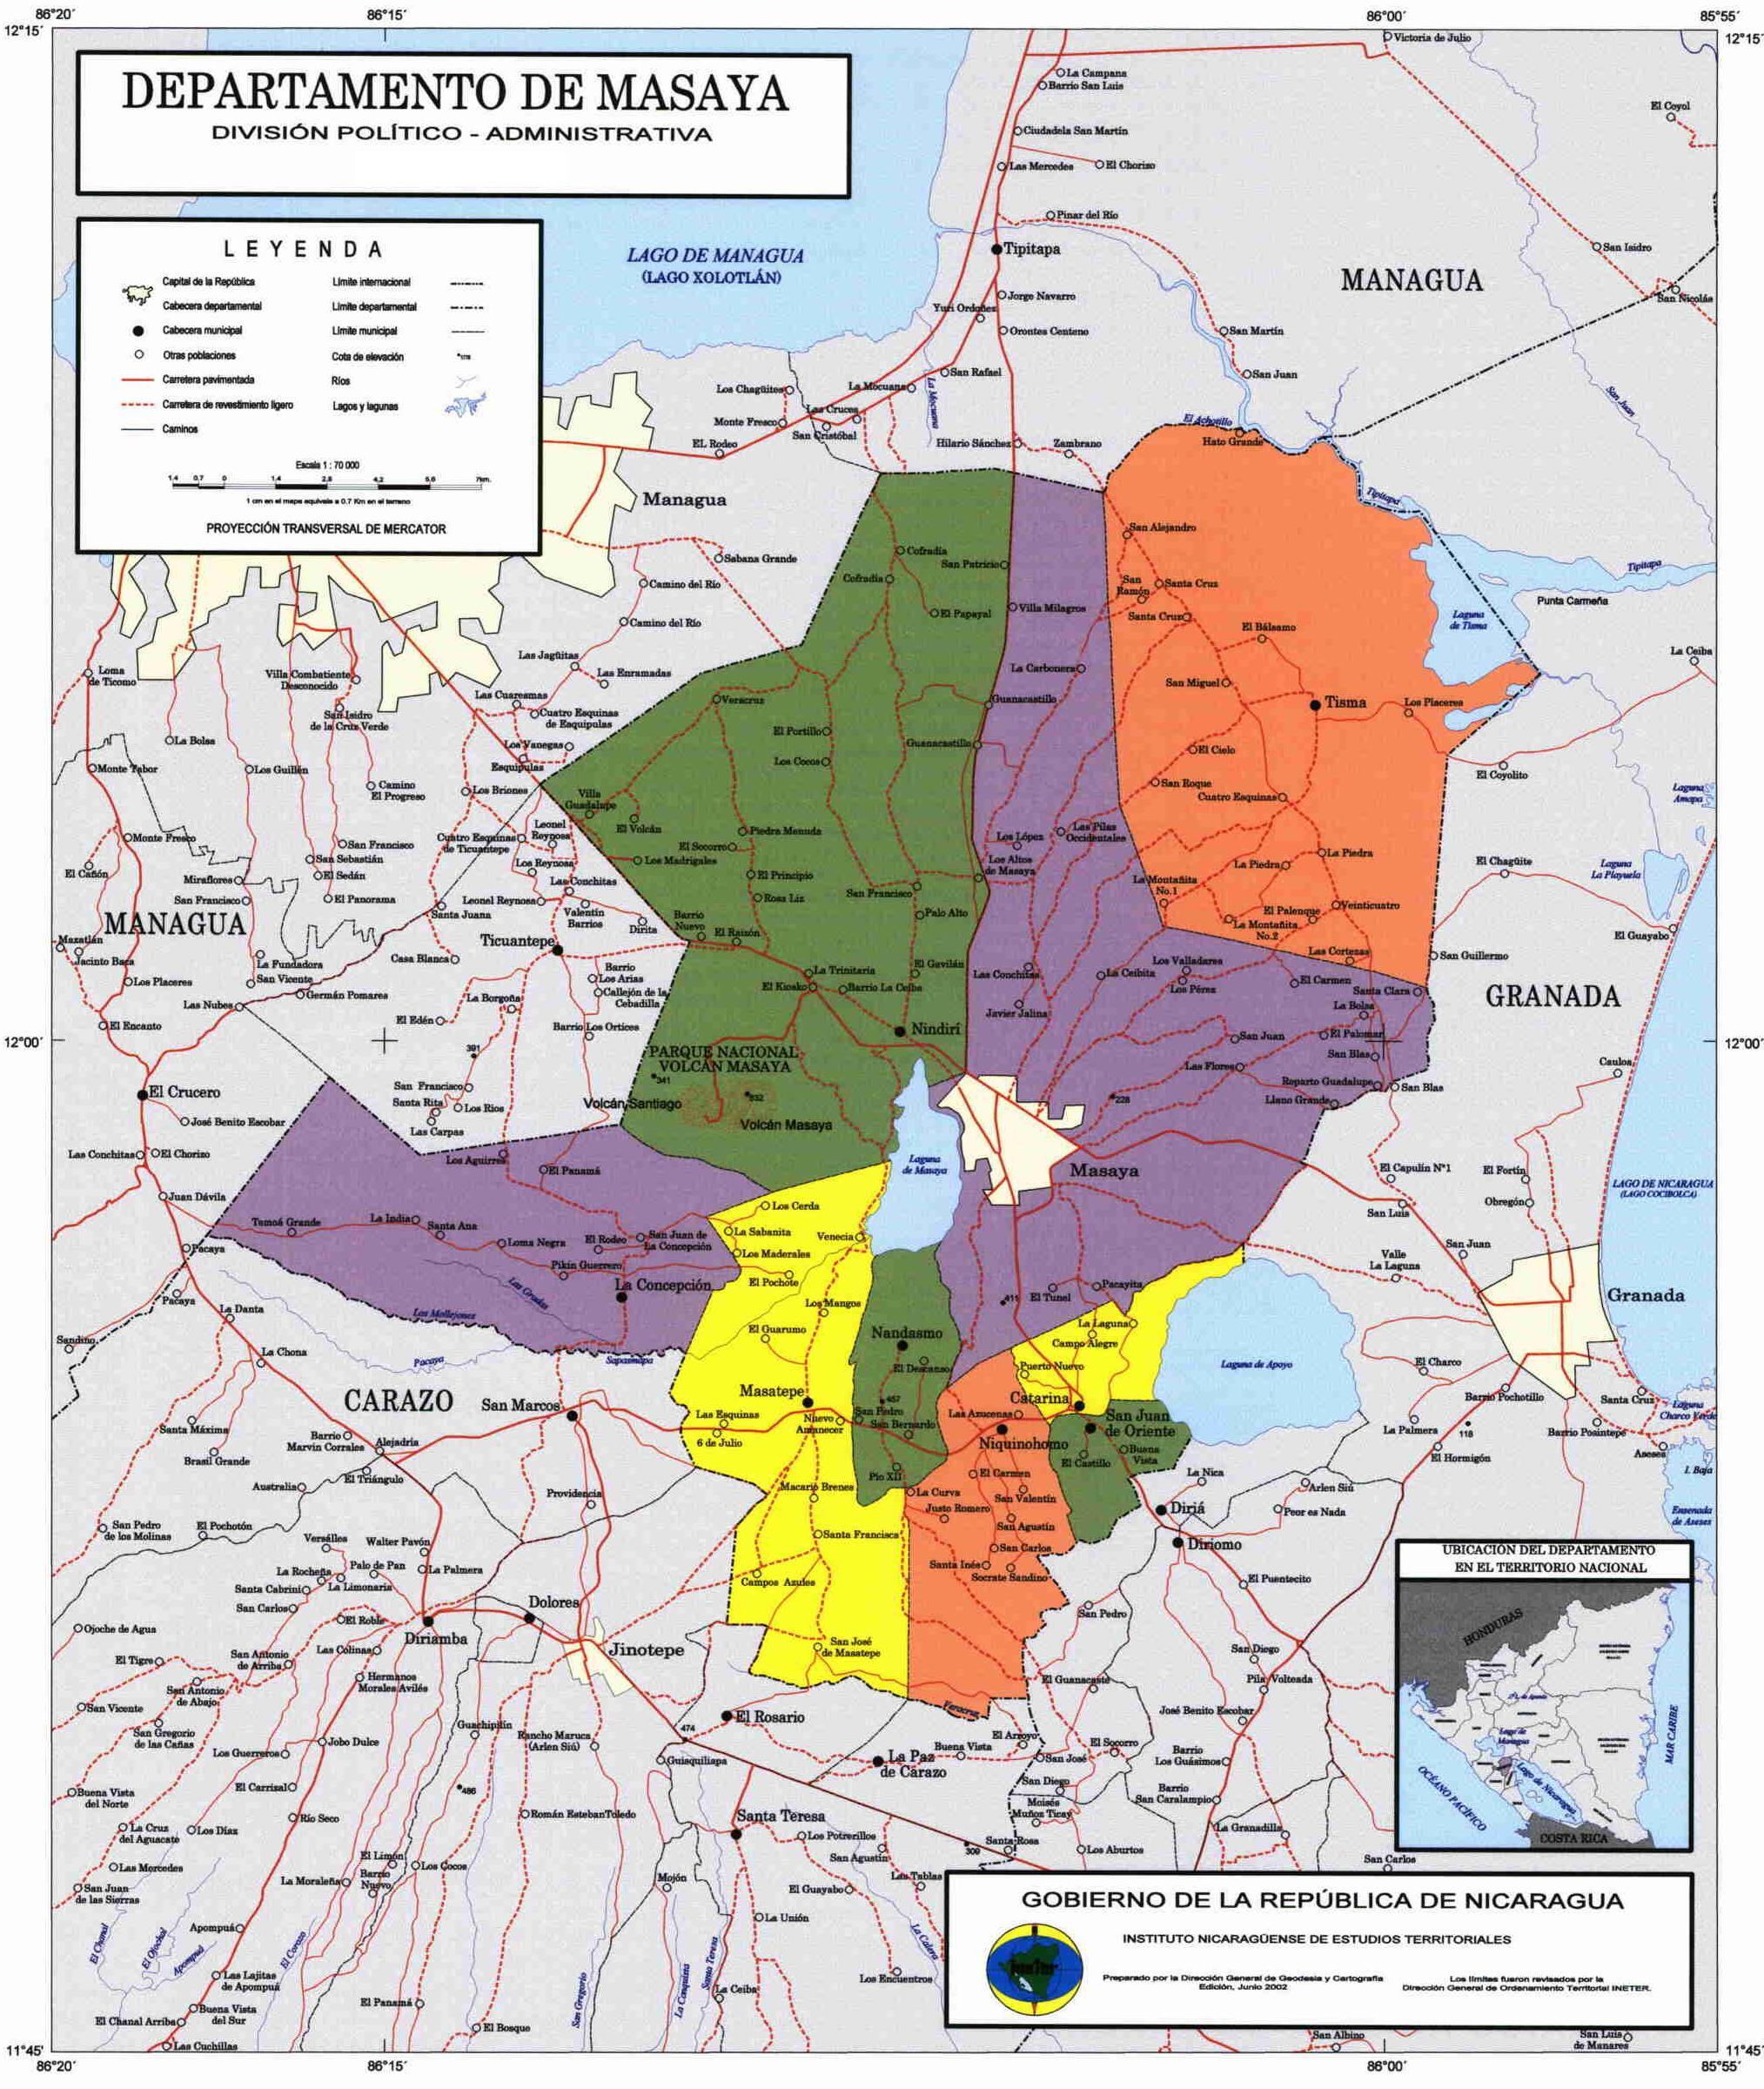 Mapa de Masaya, División Político-Administrativa del Departamento, Nicaragua